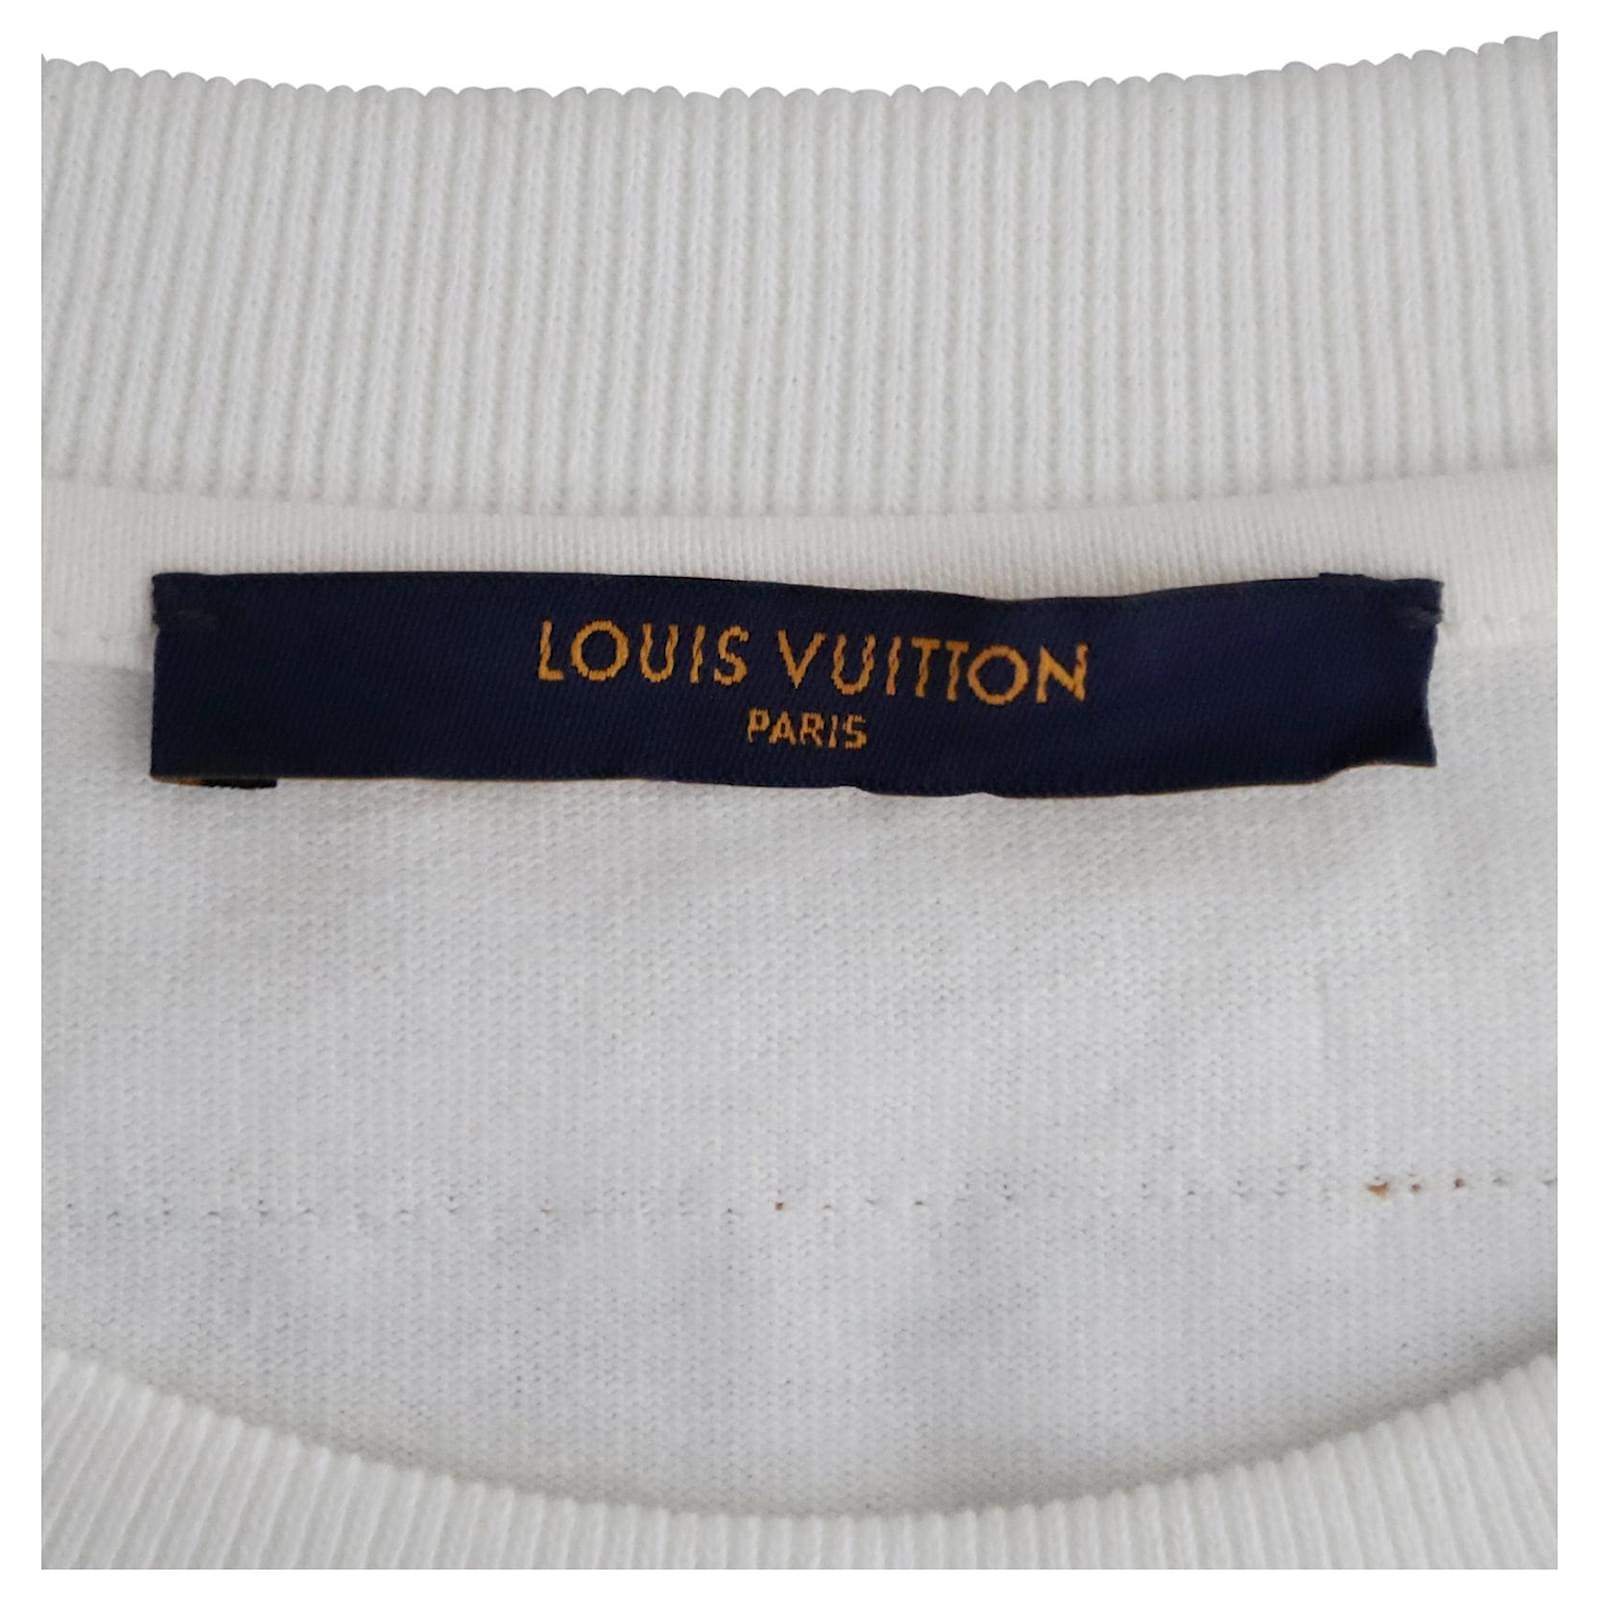 Louis Vuitton 3D LV Graffiti Embroidered Tee Shirt white Medium